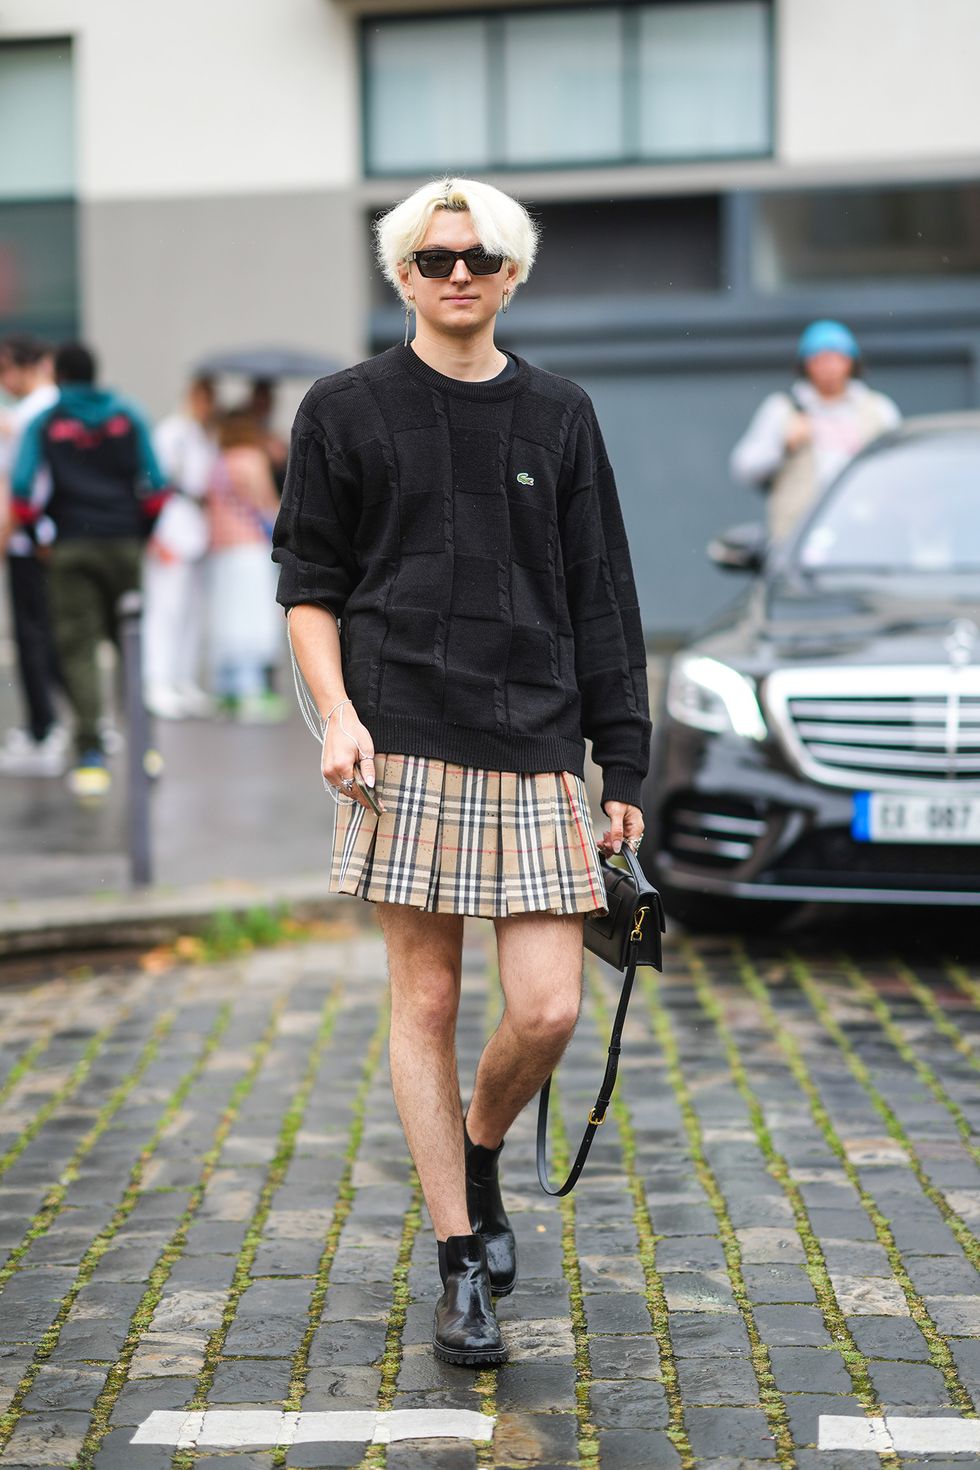 la moda inverno 2021 è ricca di inspo con i look street style liberi da stereotipi binari moda uomo e moda donna, guarda gli outfit gender fluid da copiare ora